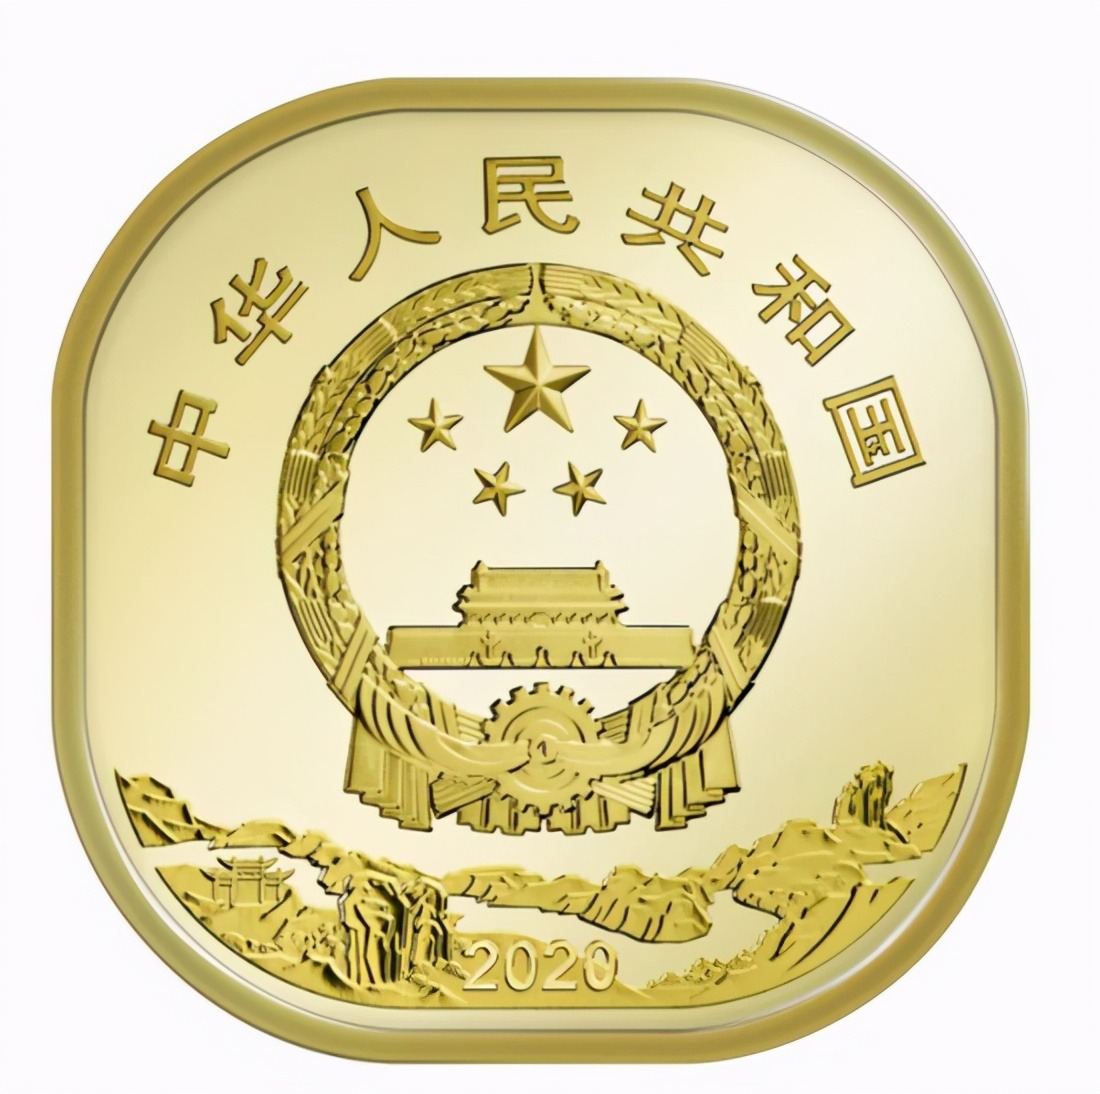 中国法定货币使用国徽_中国法定货币使用国徽是什么